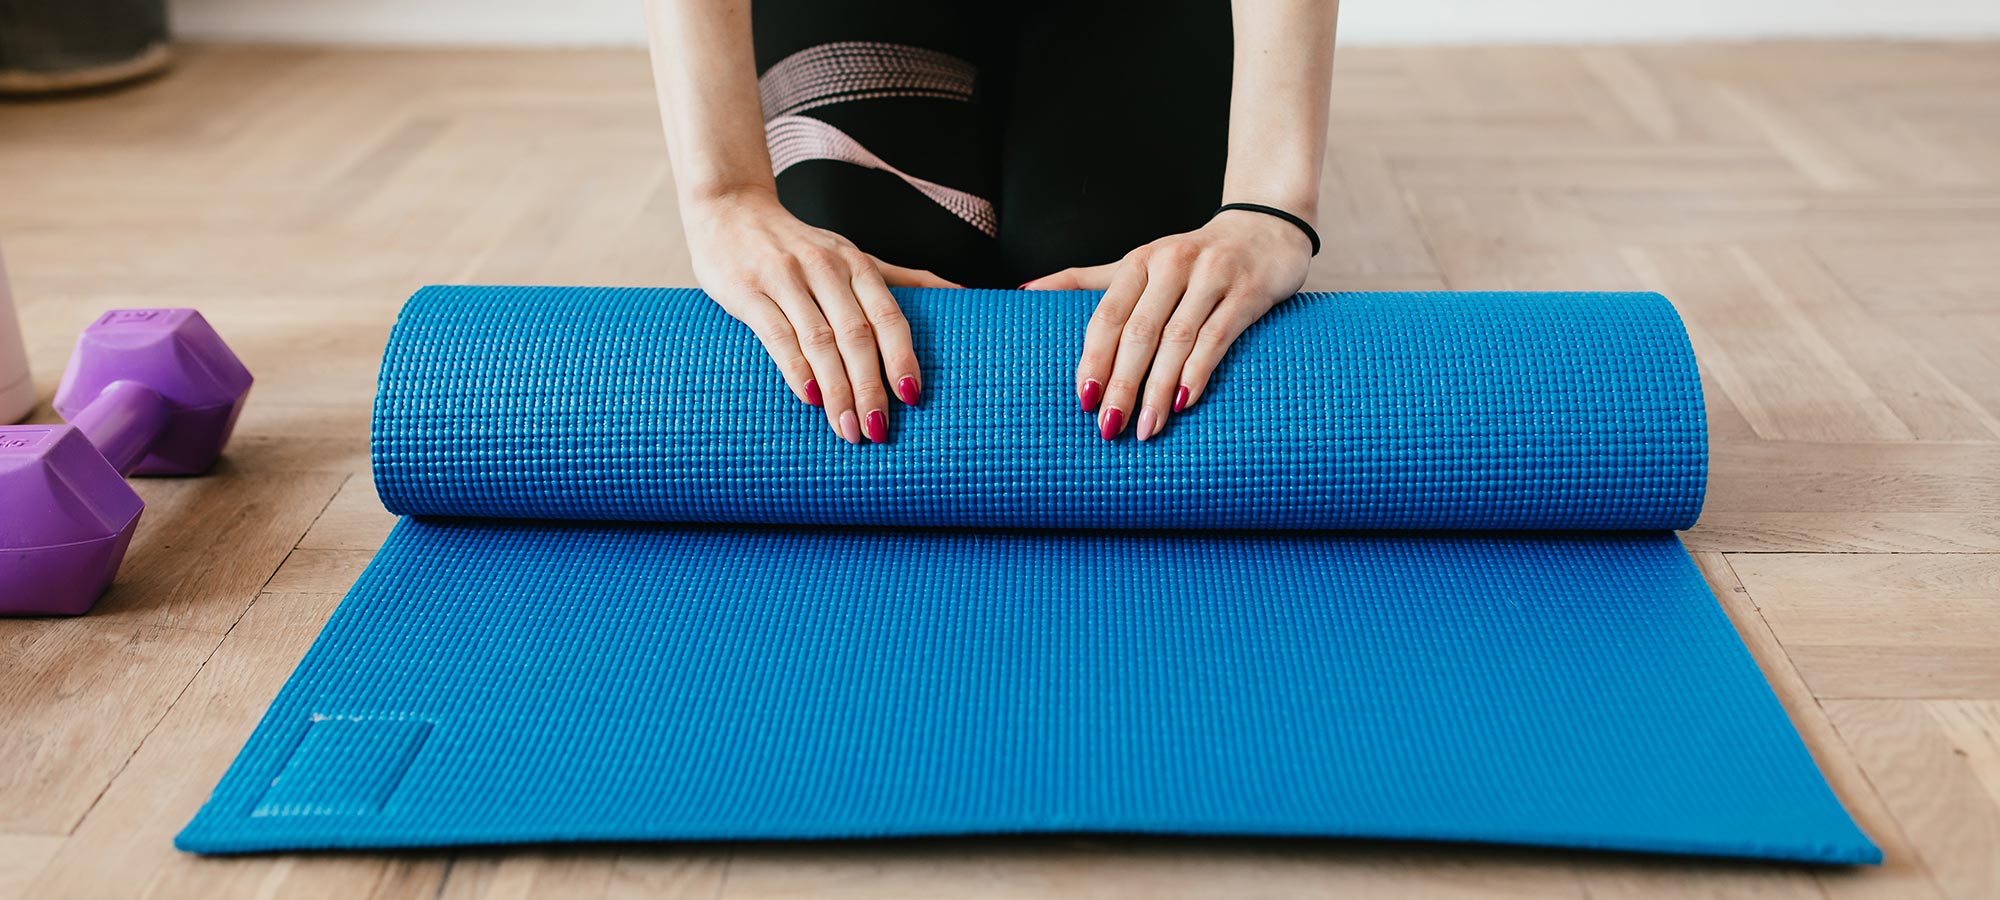 mani donna smalto tappetino yoga fitness inizio fine allenamento